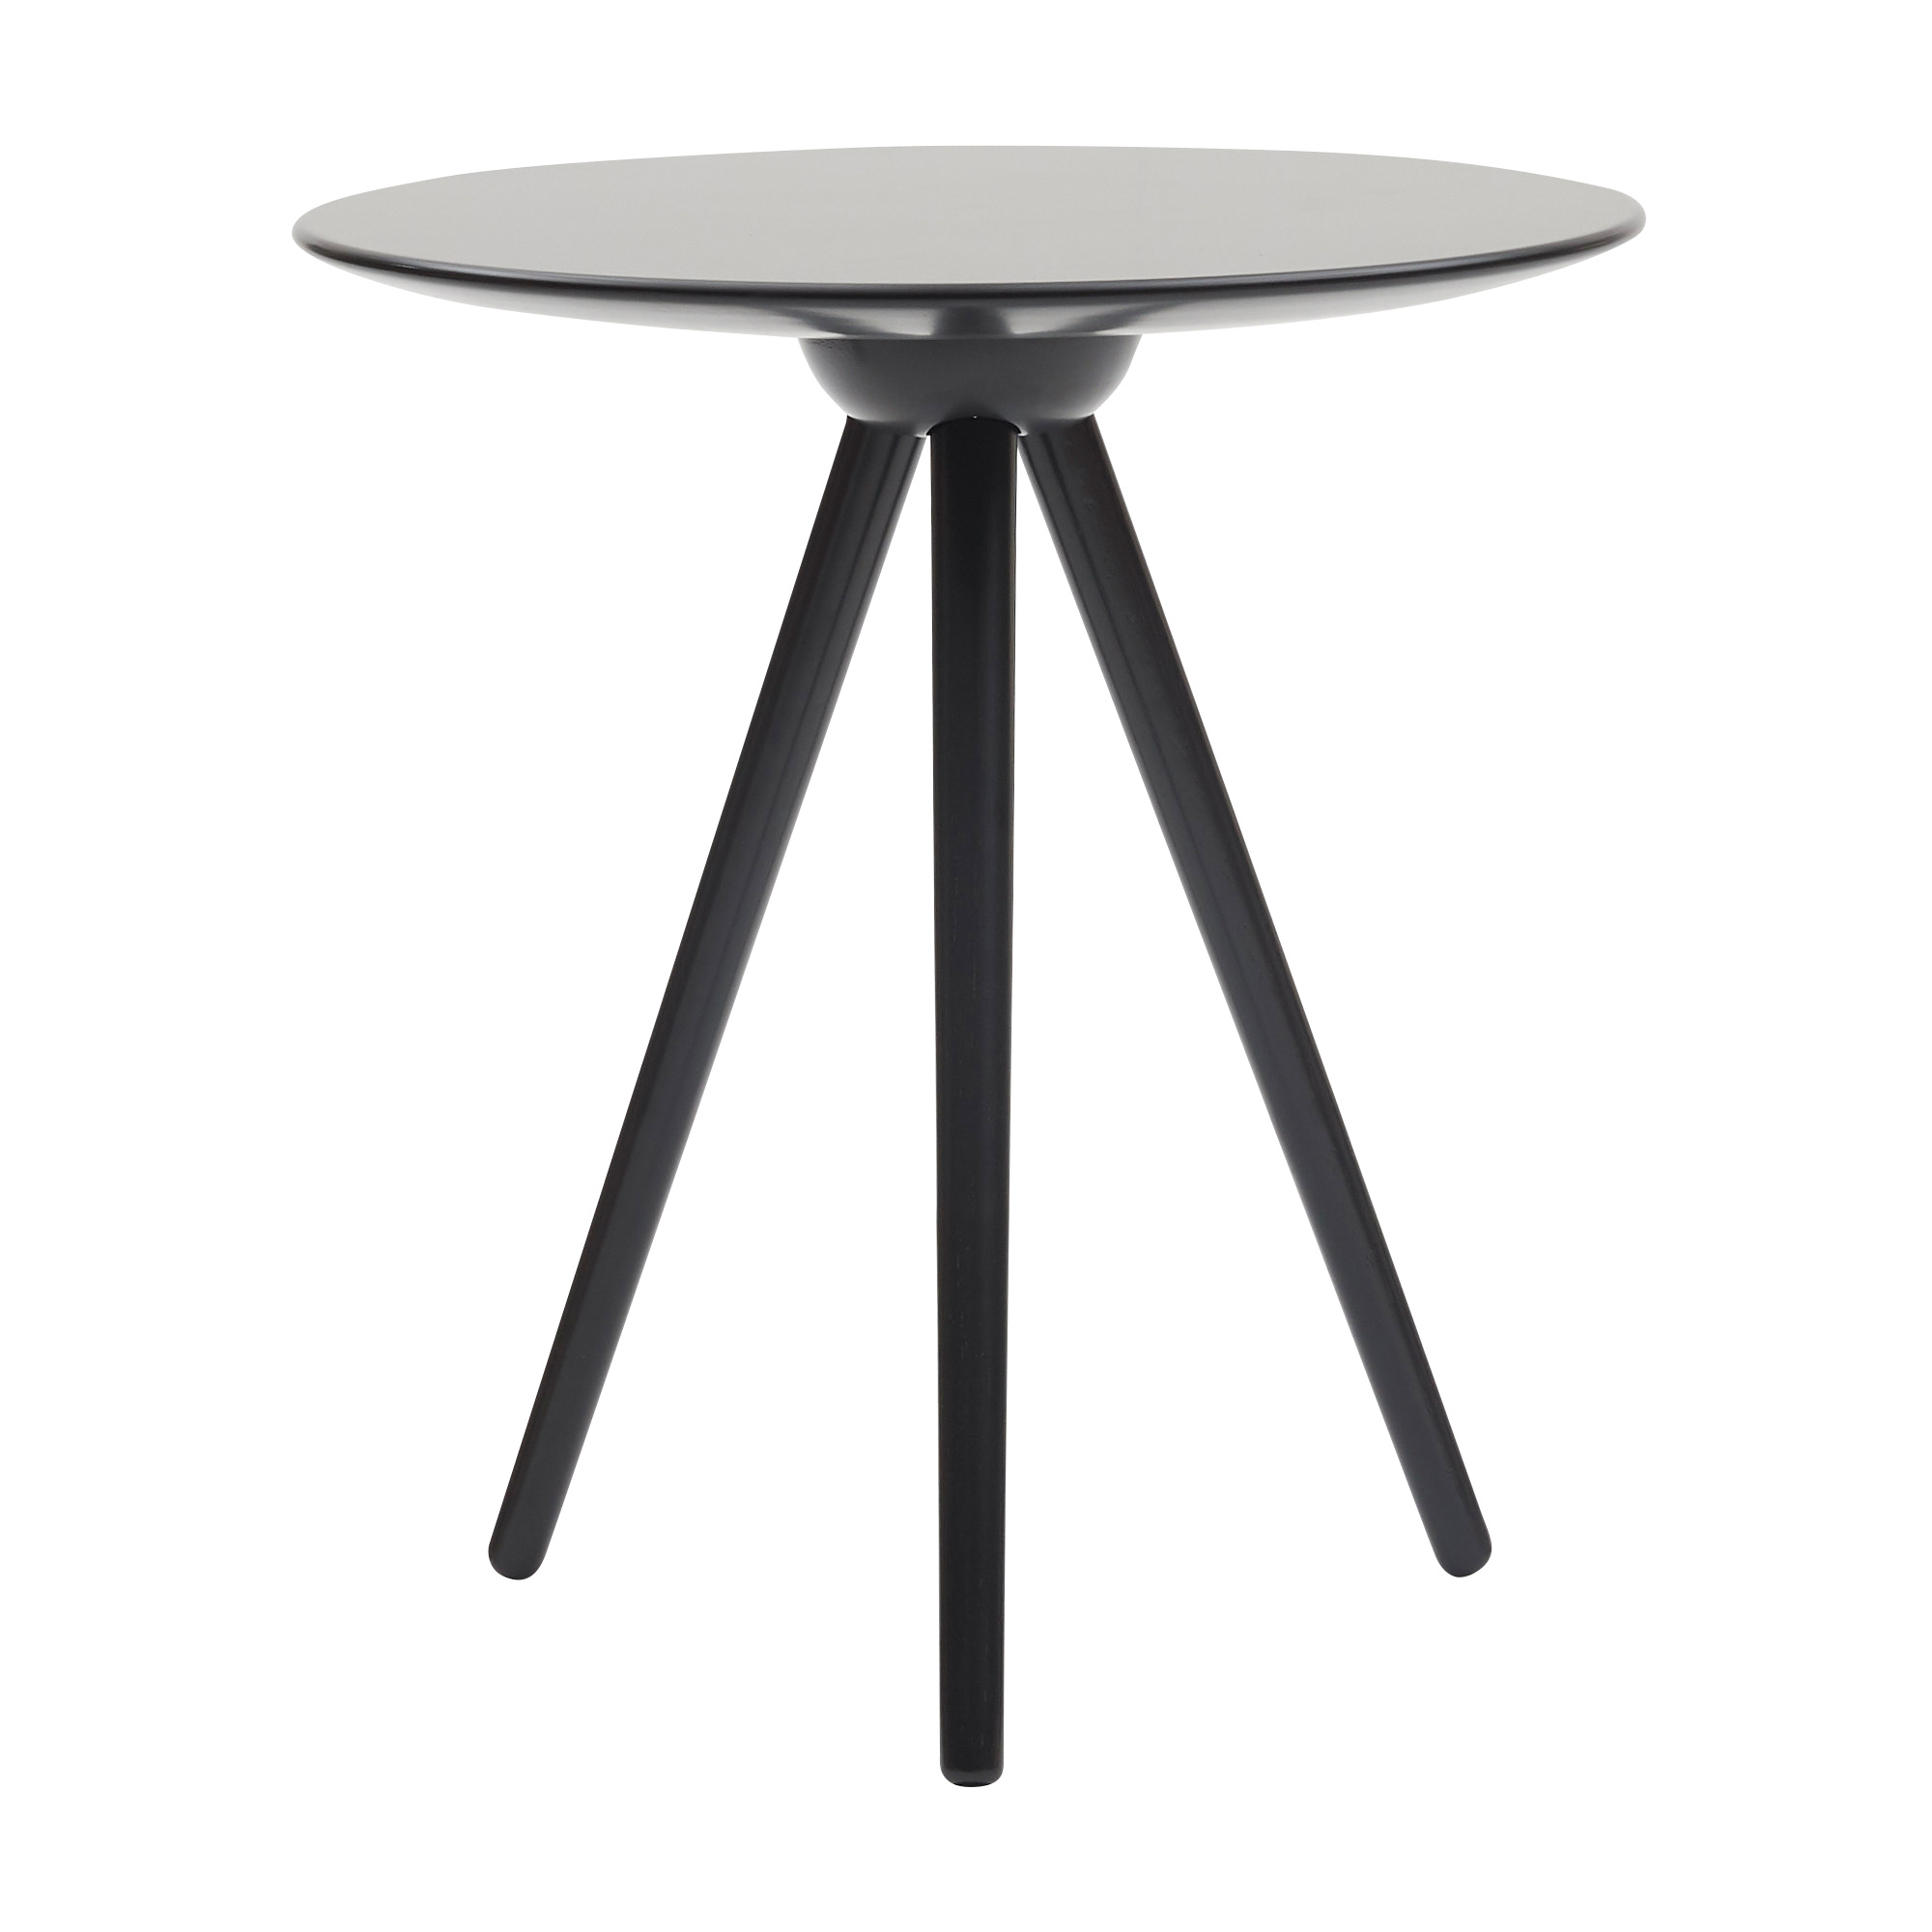 softline - table d'appoint circoe - noir ral 9005/laqué/plateau de table mdf/structure frêne/h x ø 50x45cm